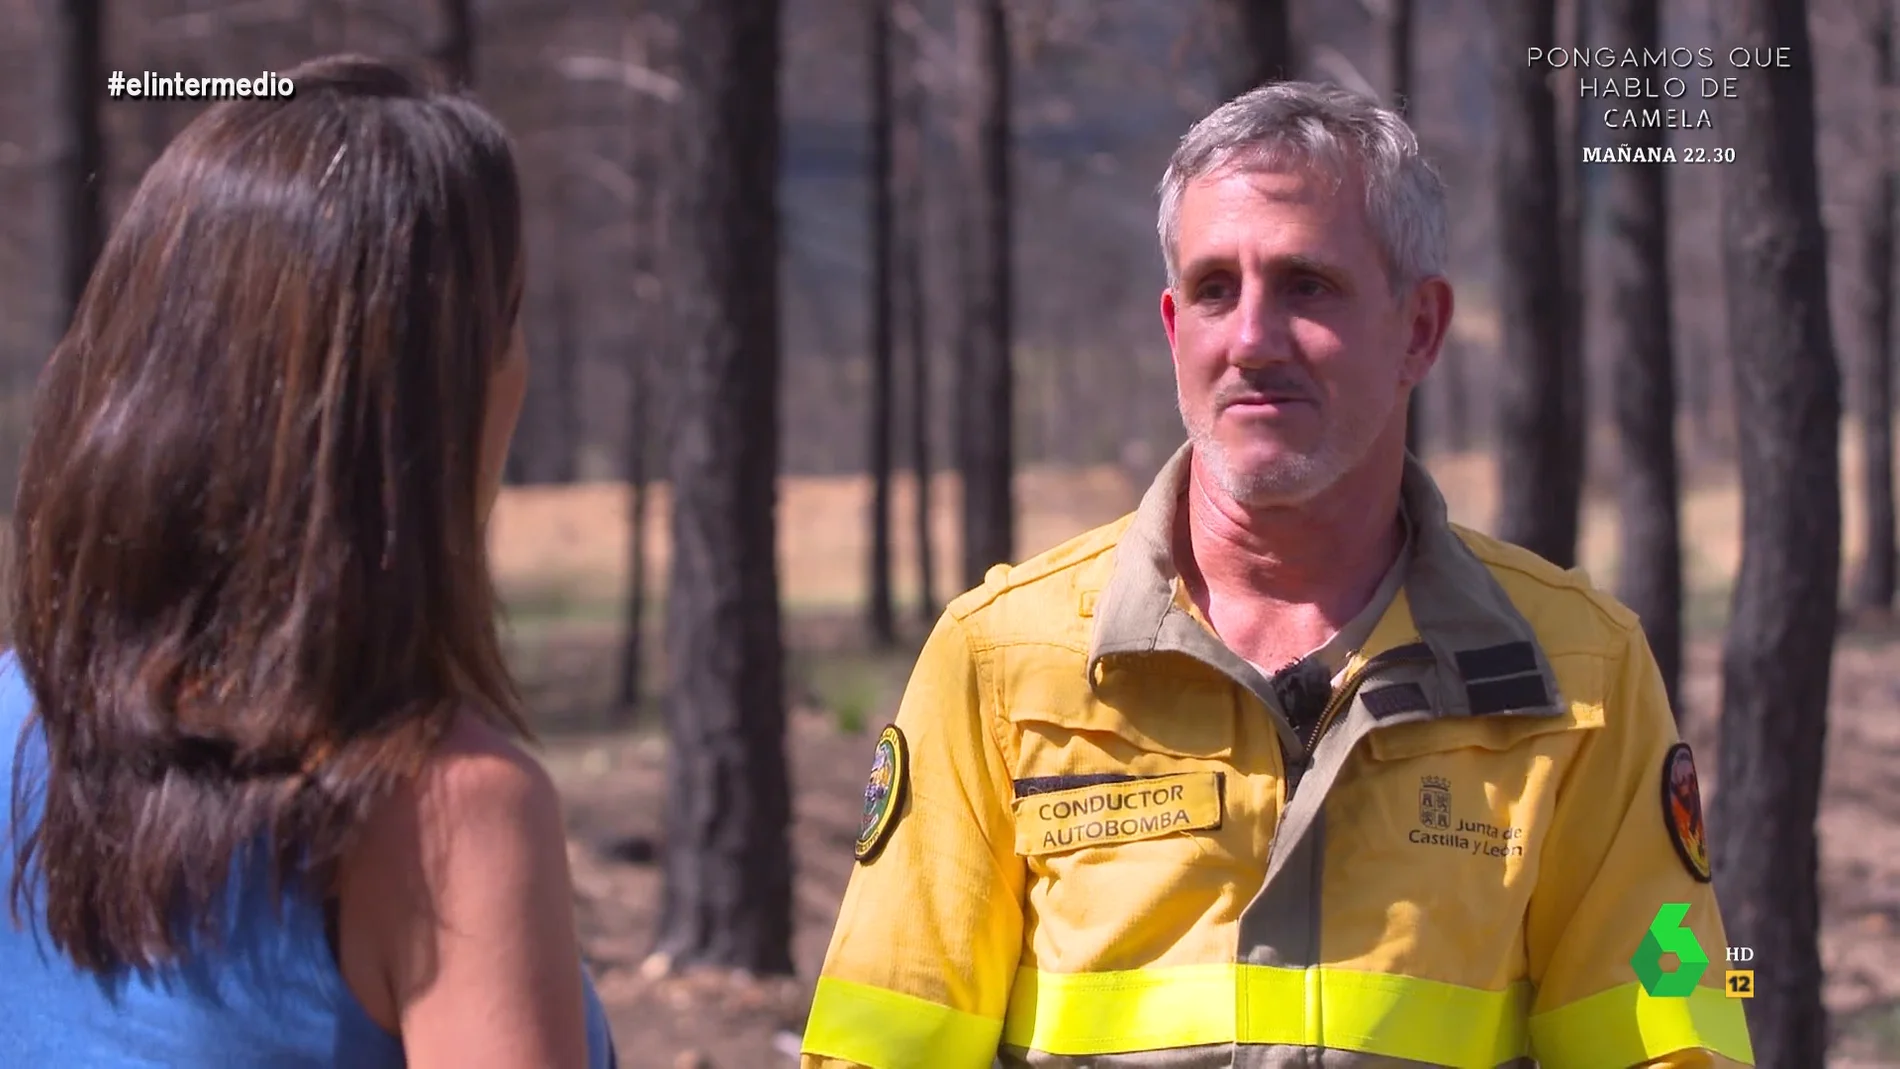 Un bombero forestal denuncia su precaria situación: En Castilla y León no existen los bomberos forestales, somos jardineros